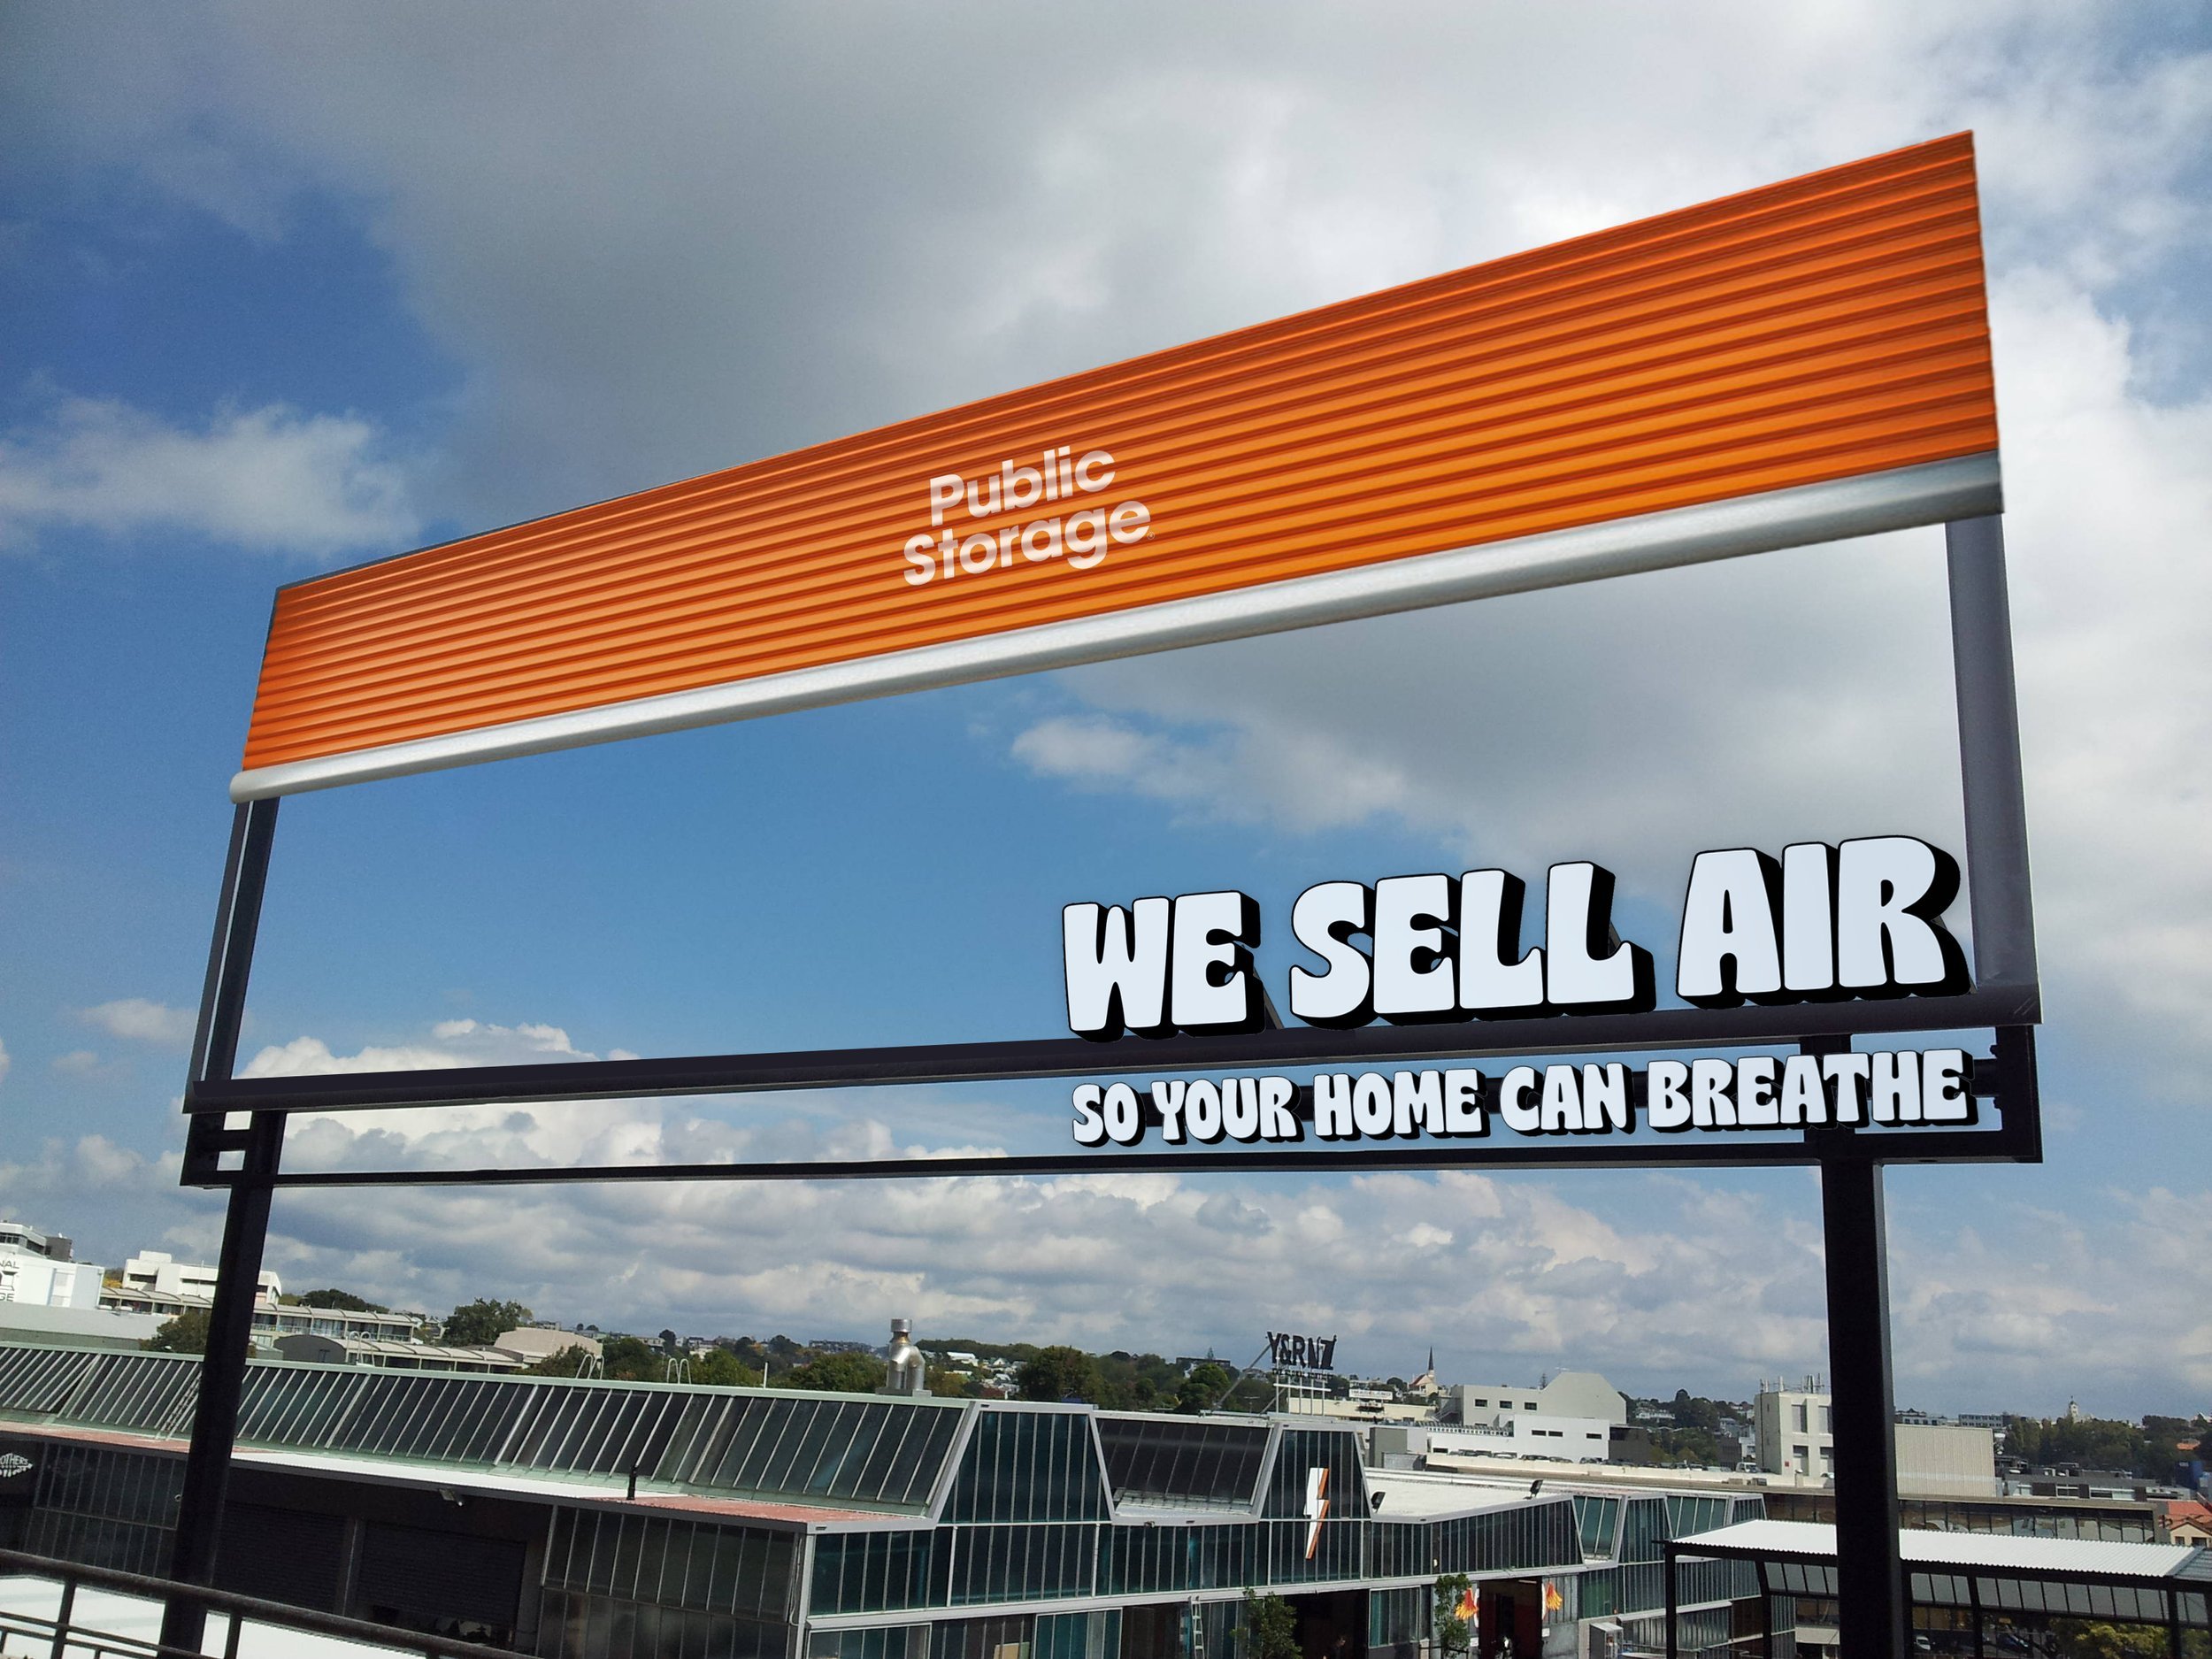 public+storage+air+billboard+1+copy.jpeg